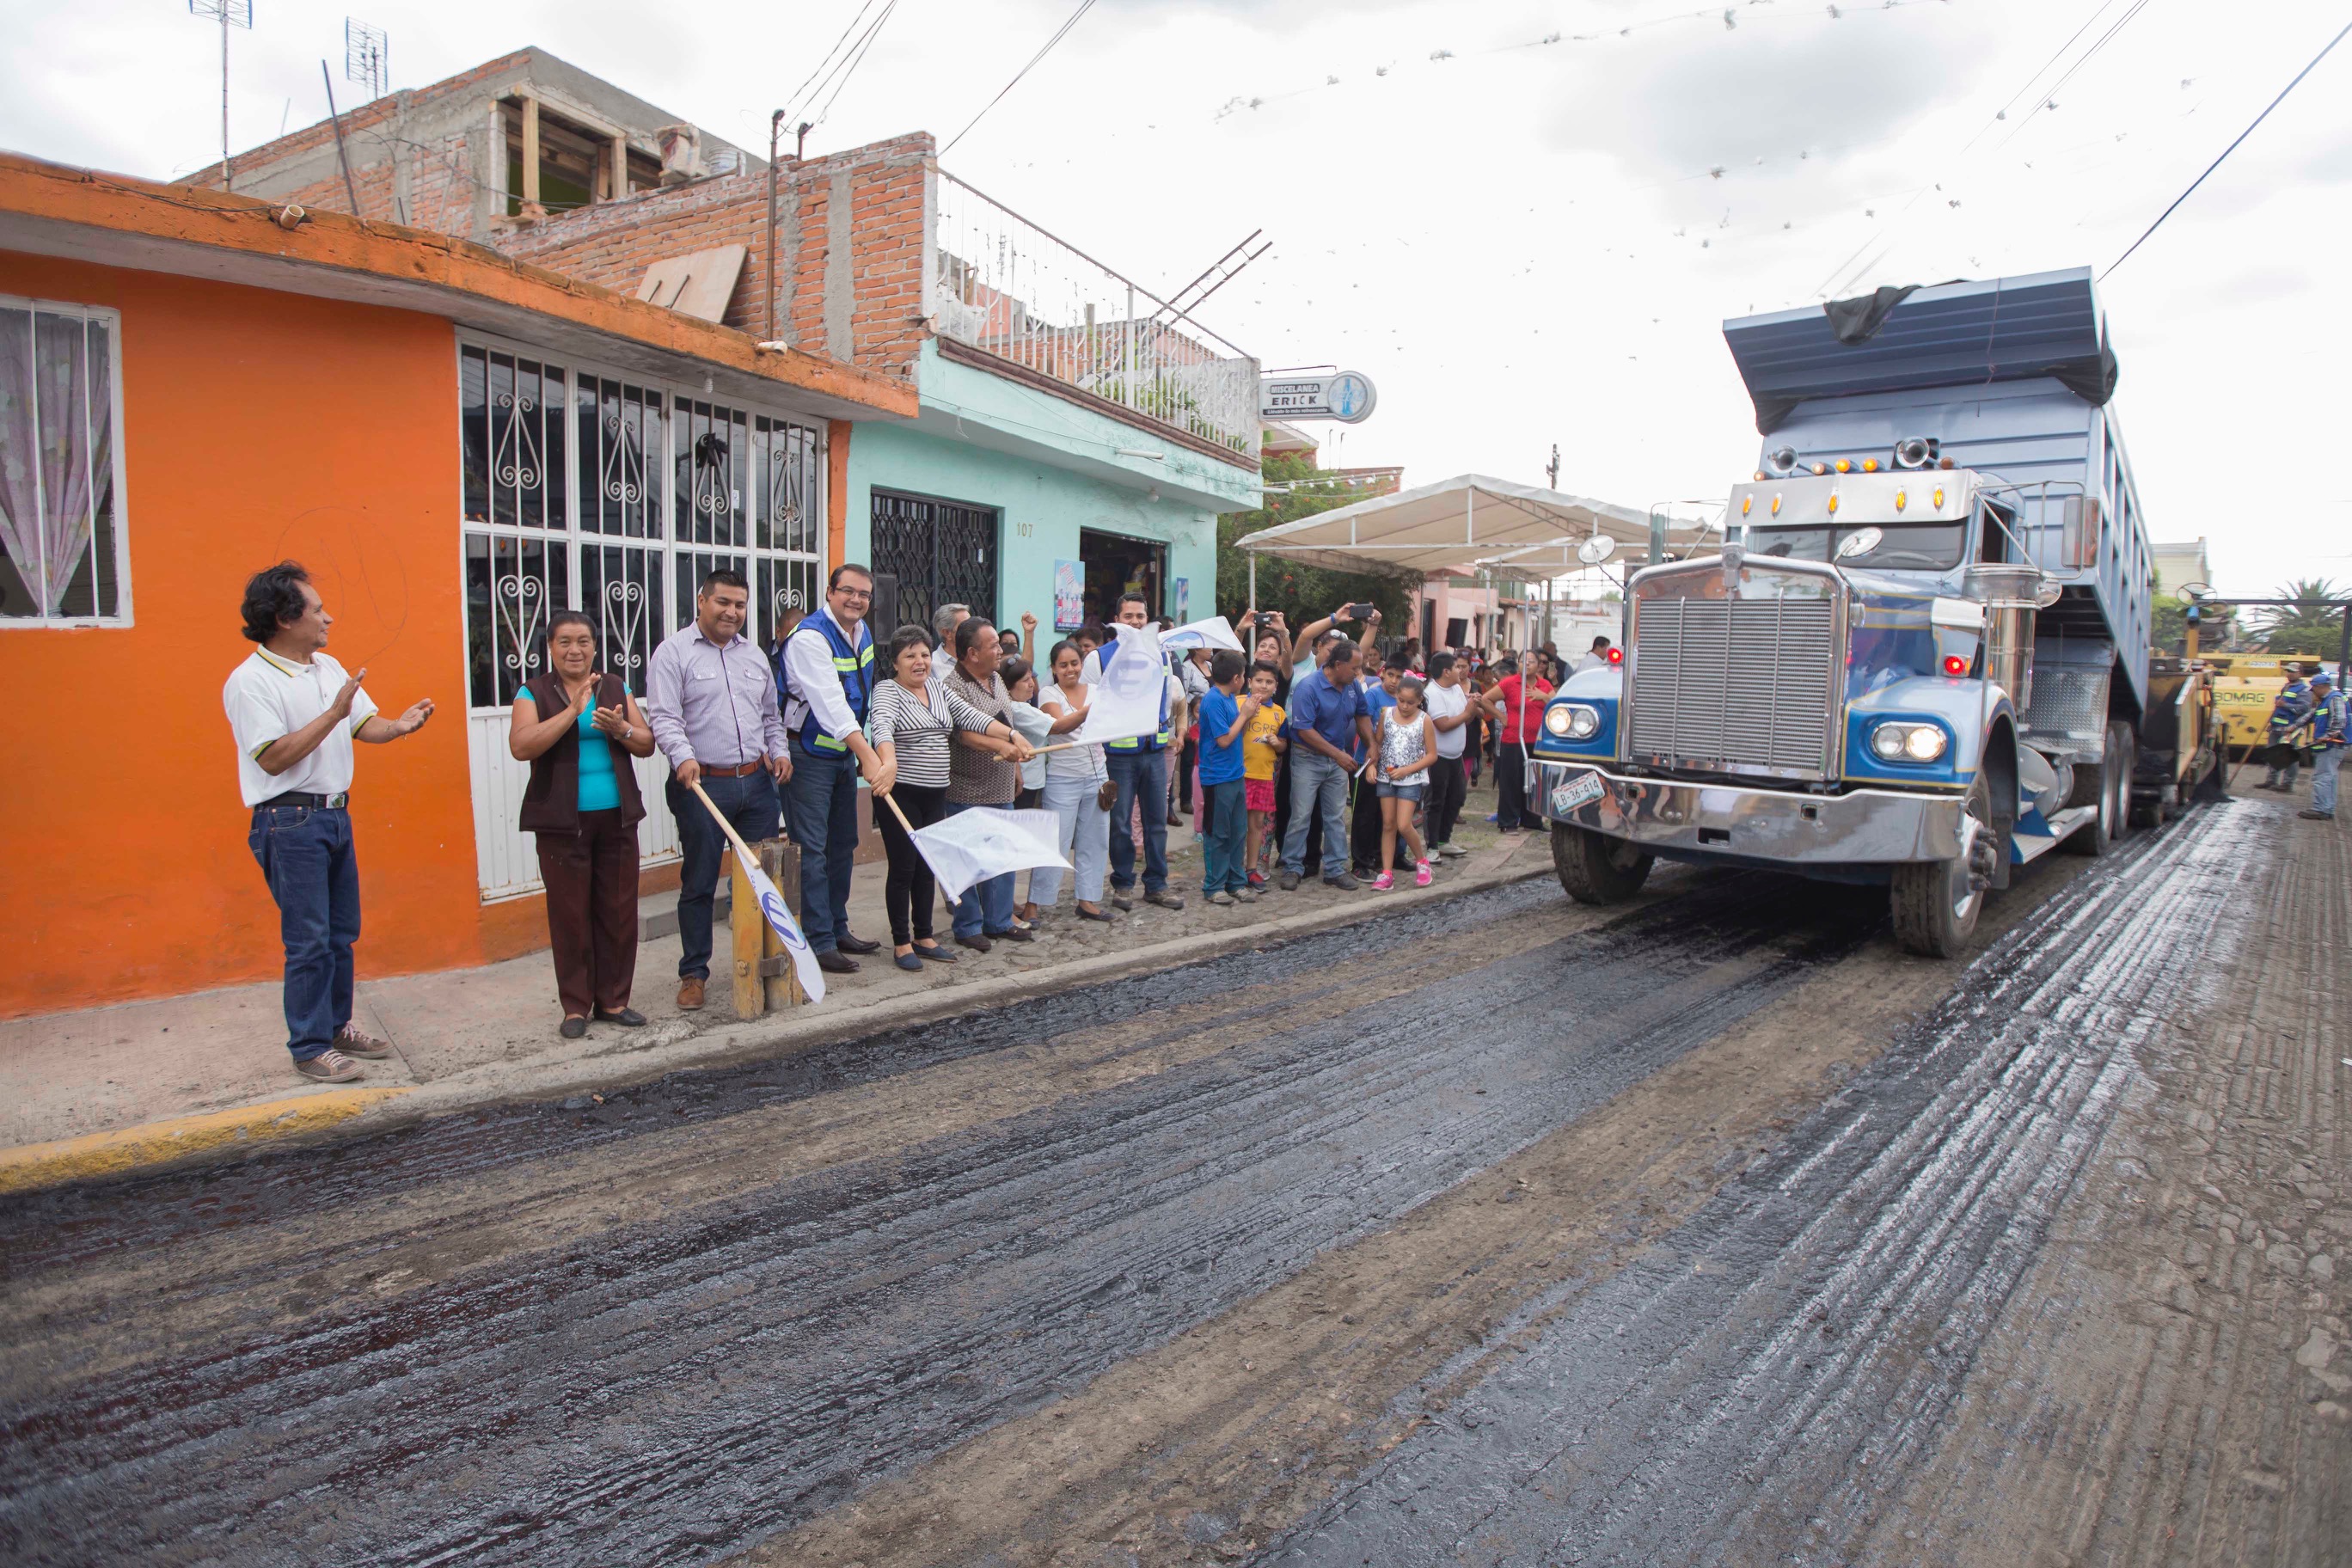  Alcalde de San Juan del Río inaugura obras de pavimentación en colonia Infonavit San Isidro